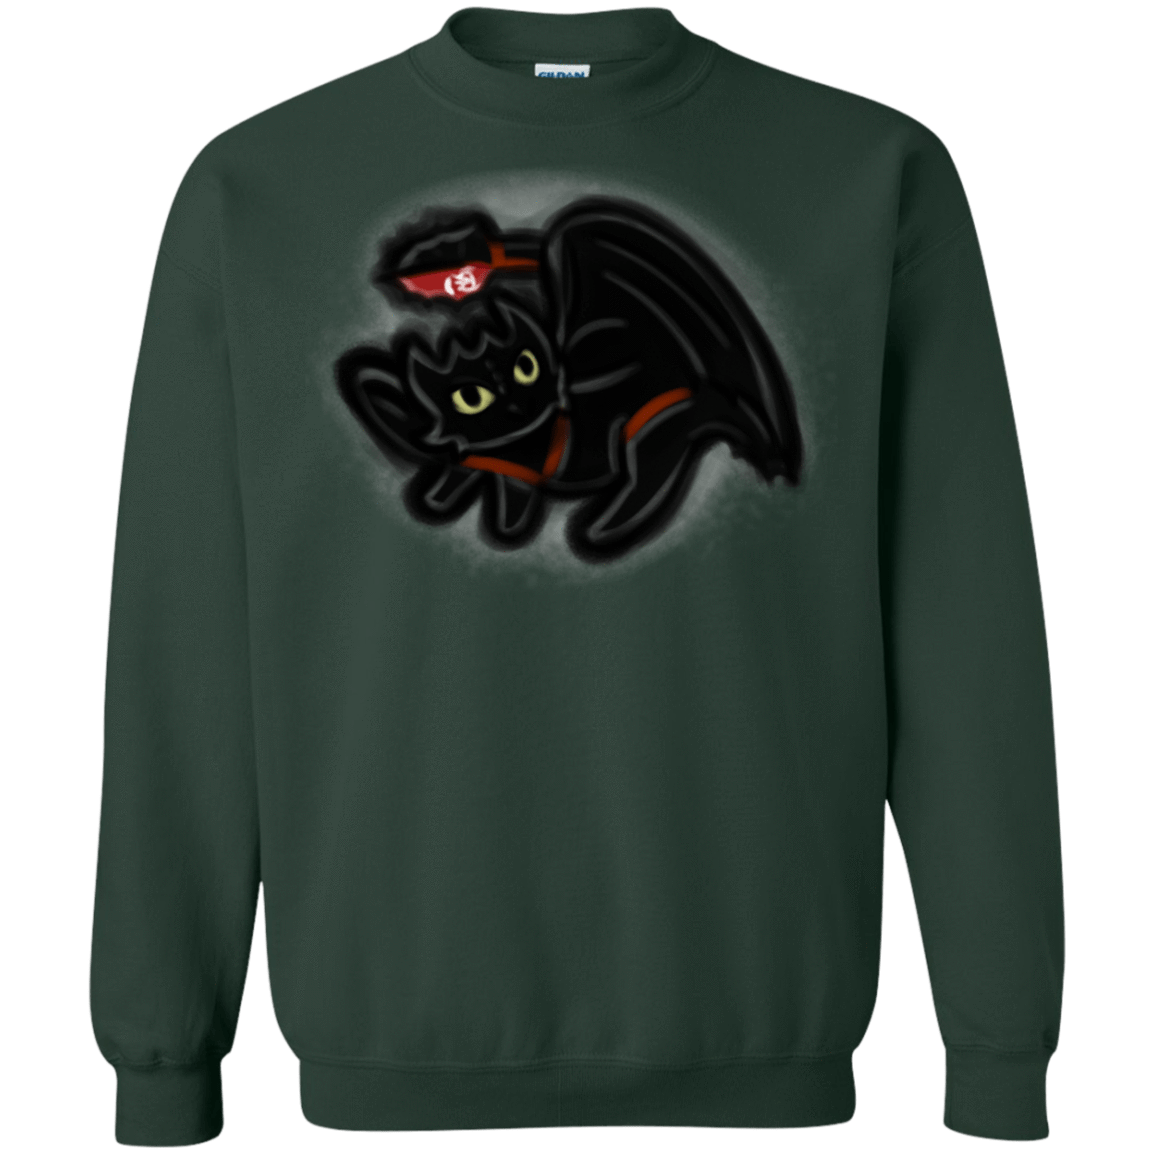 Sweatshirts Forest Green / S Toothless Simba Crewneck Sweatshirt